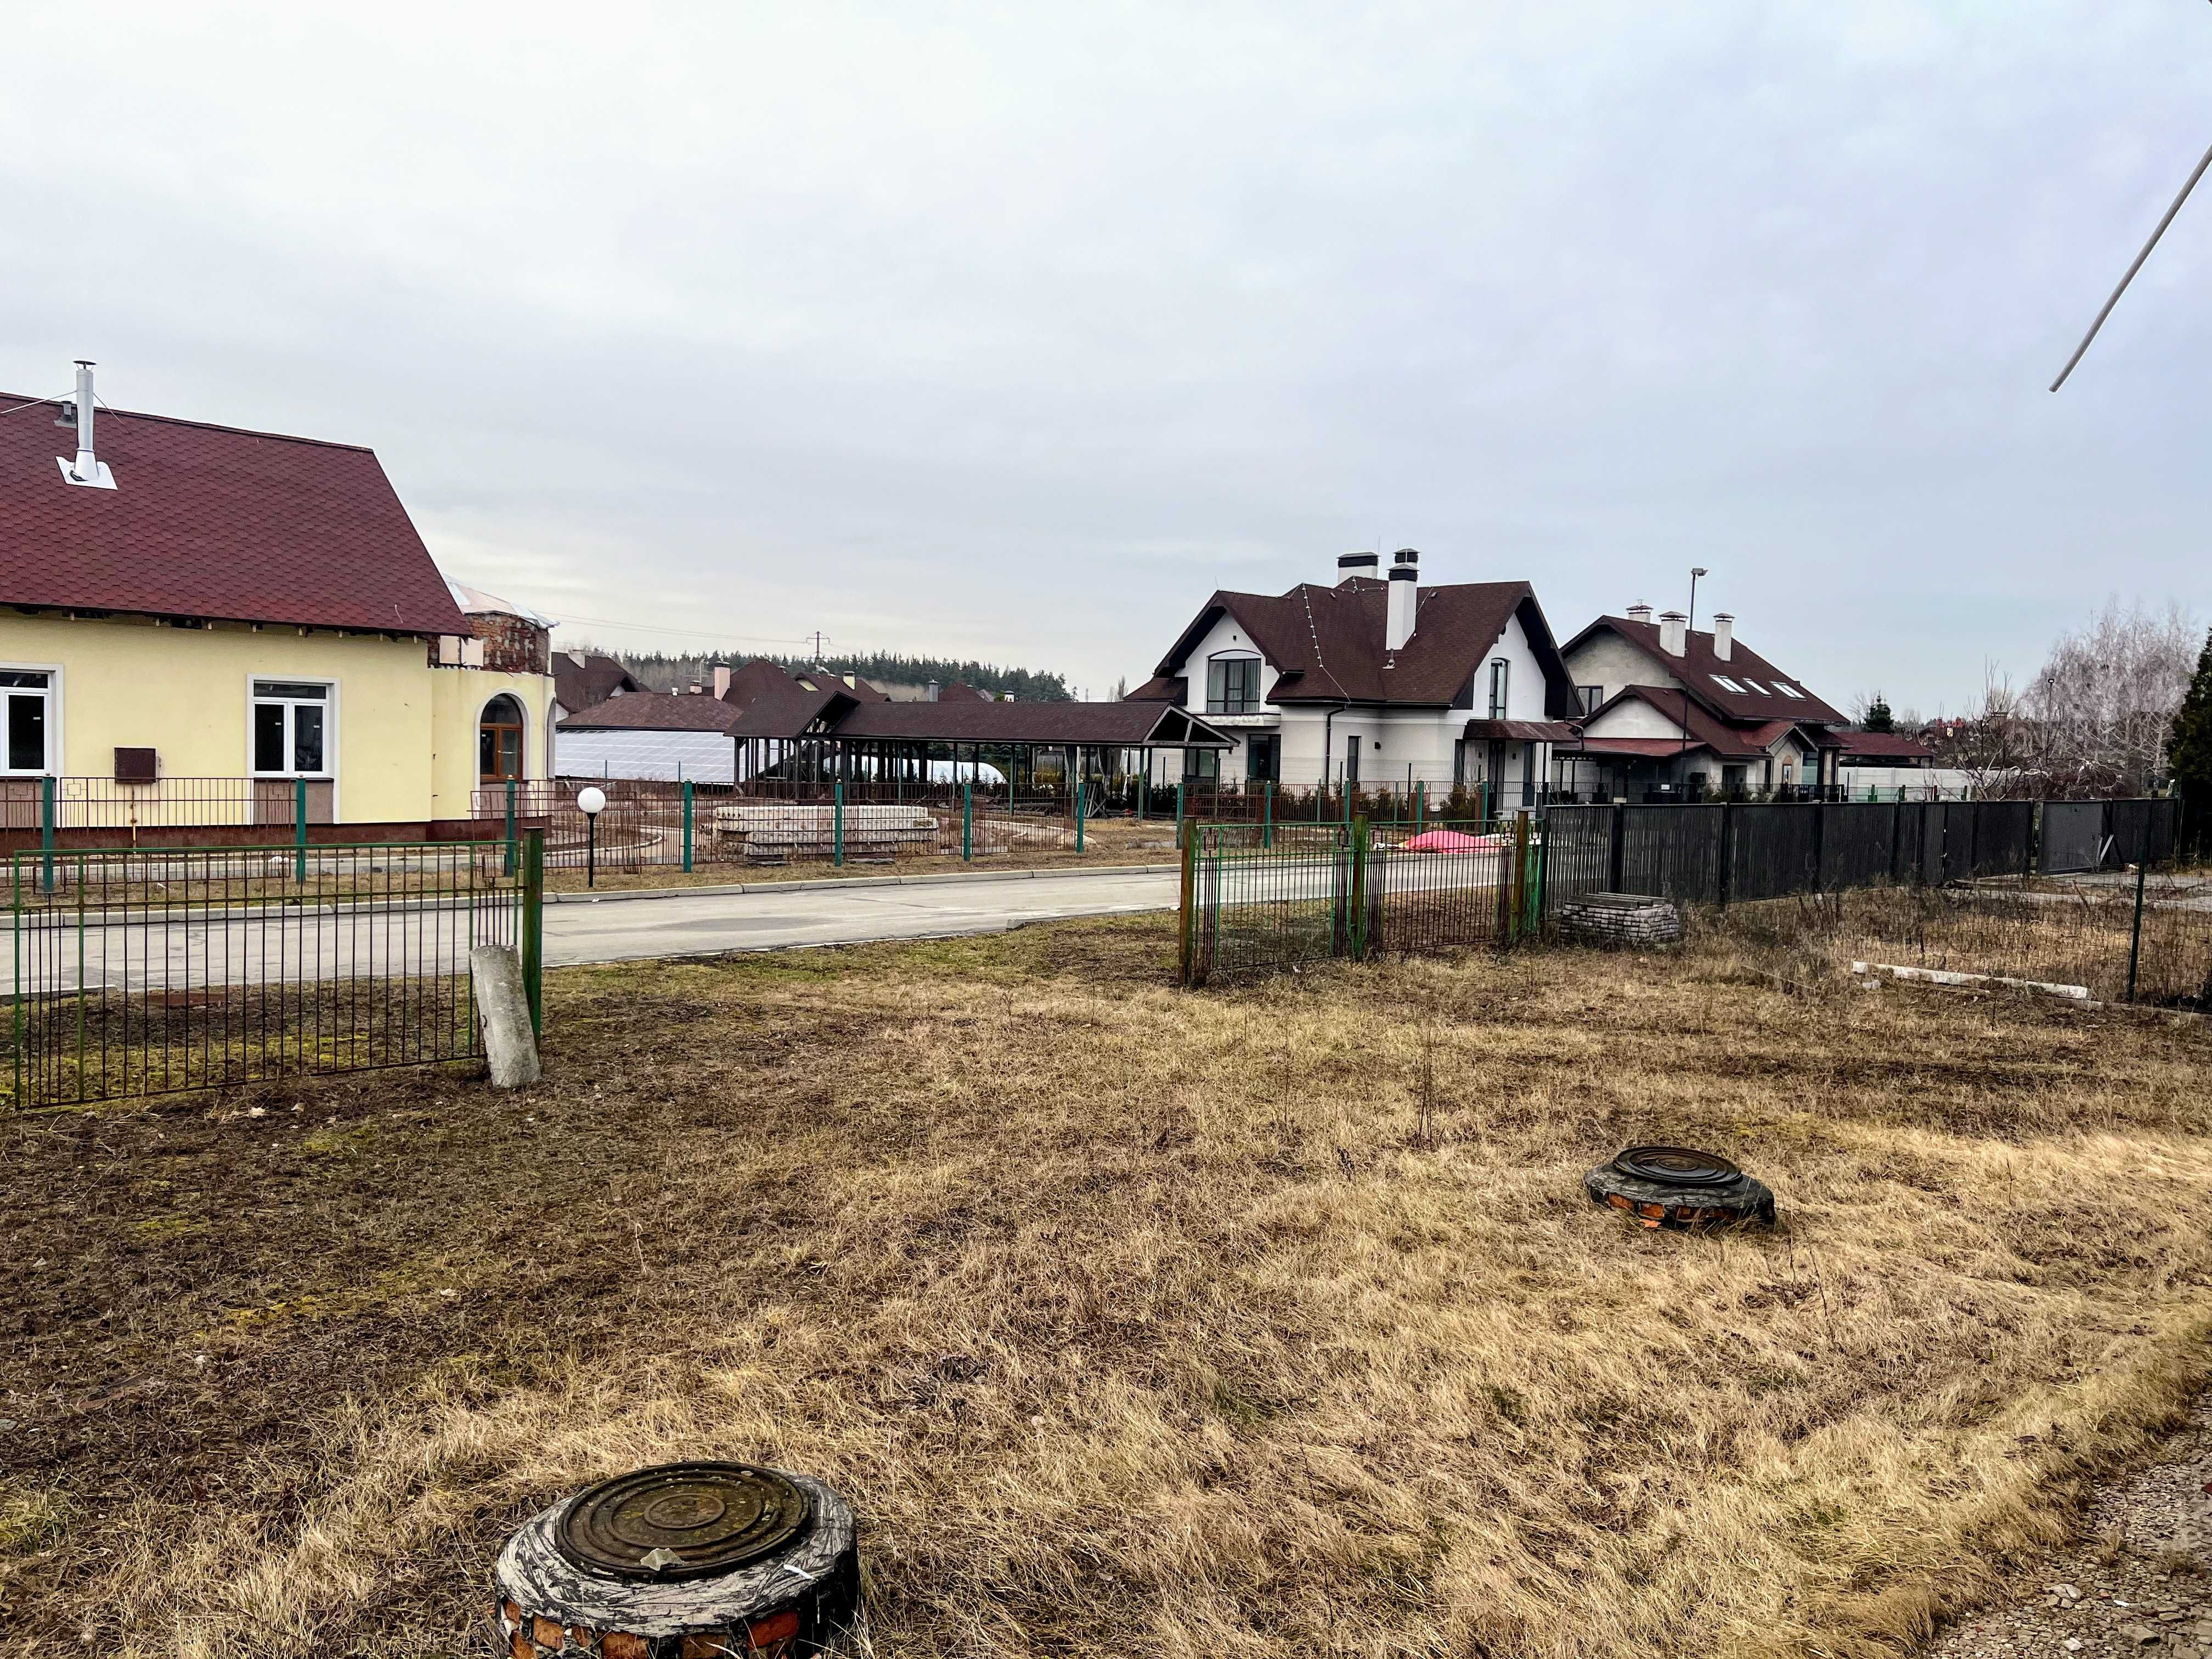 Продаж будинку 260м в закритому містечку / 15 хв від Києва, під ремонт